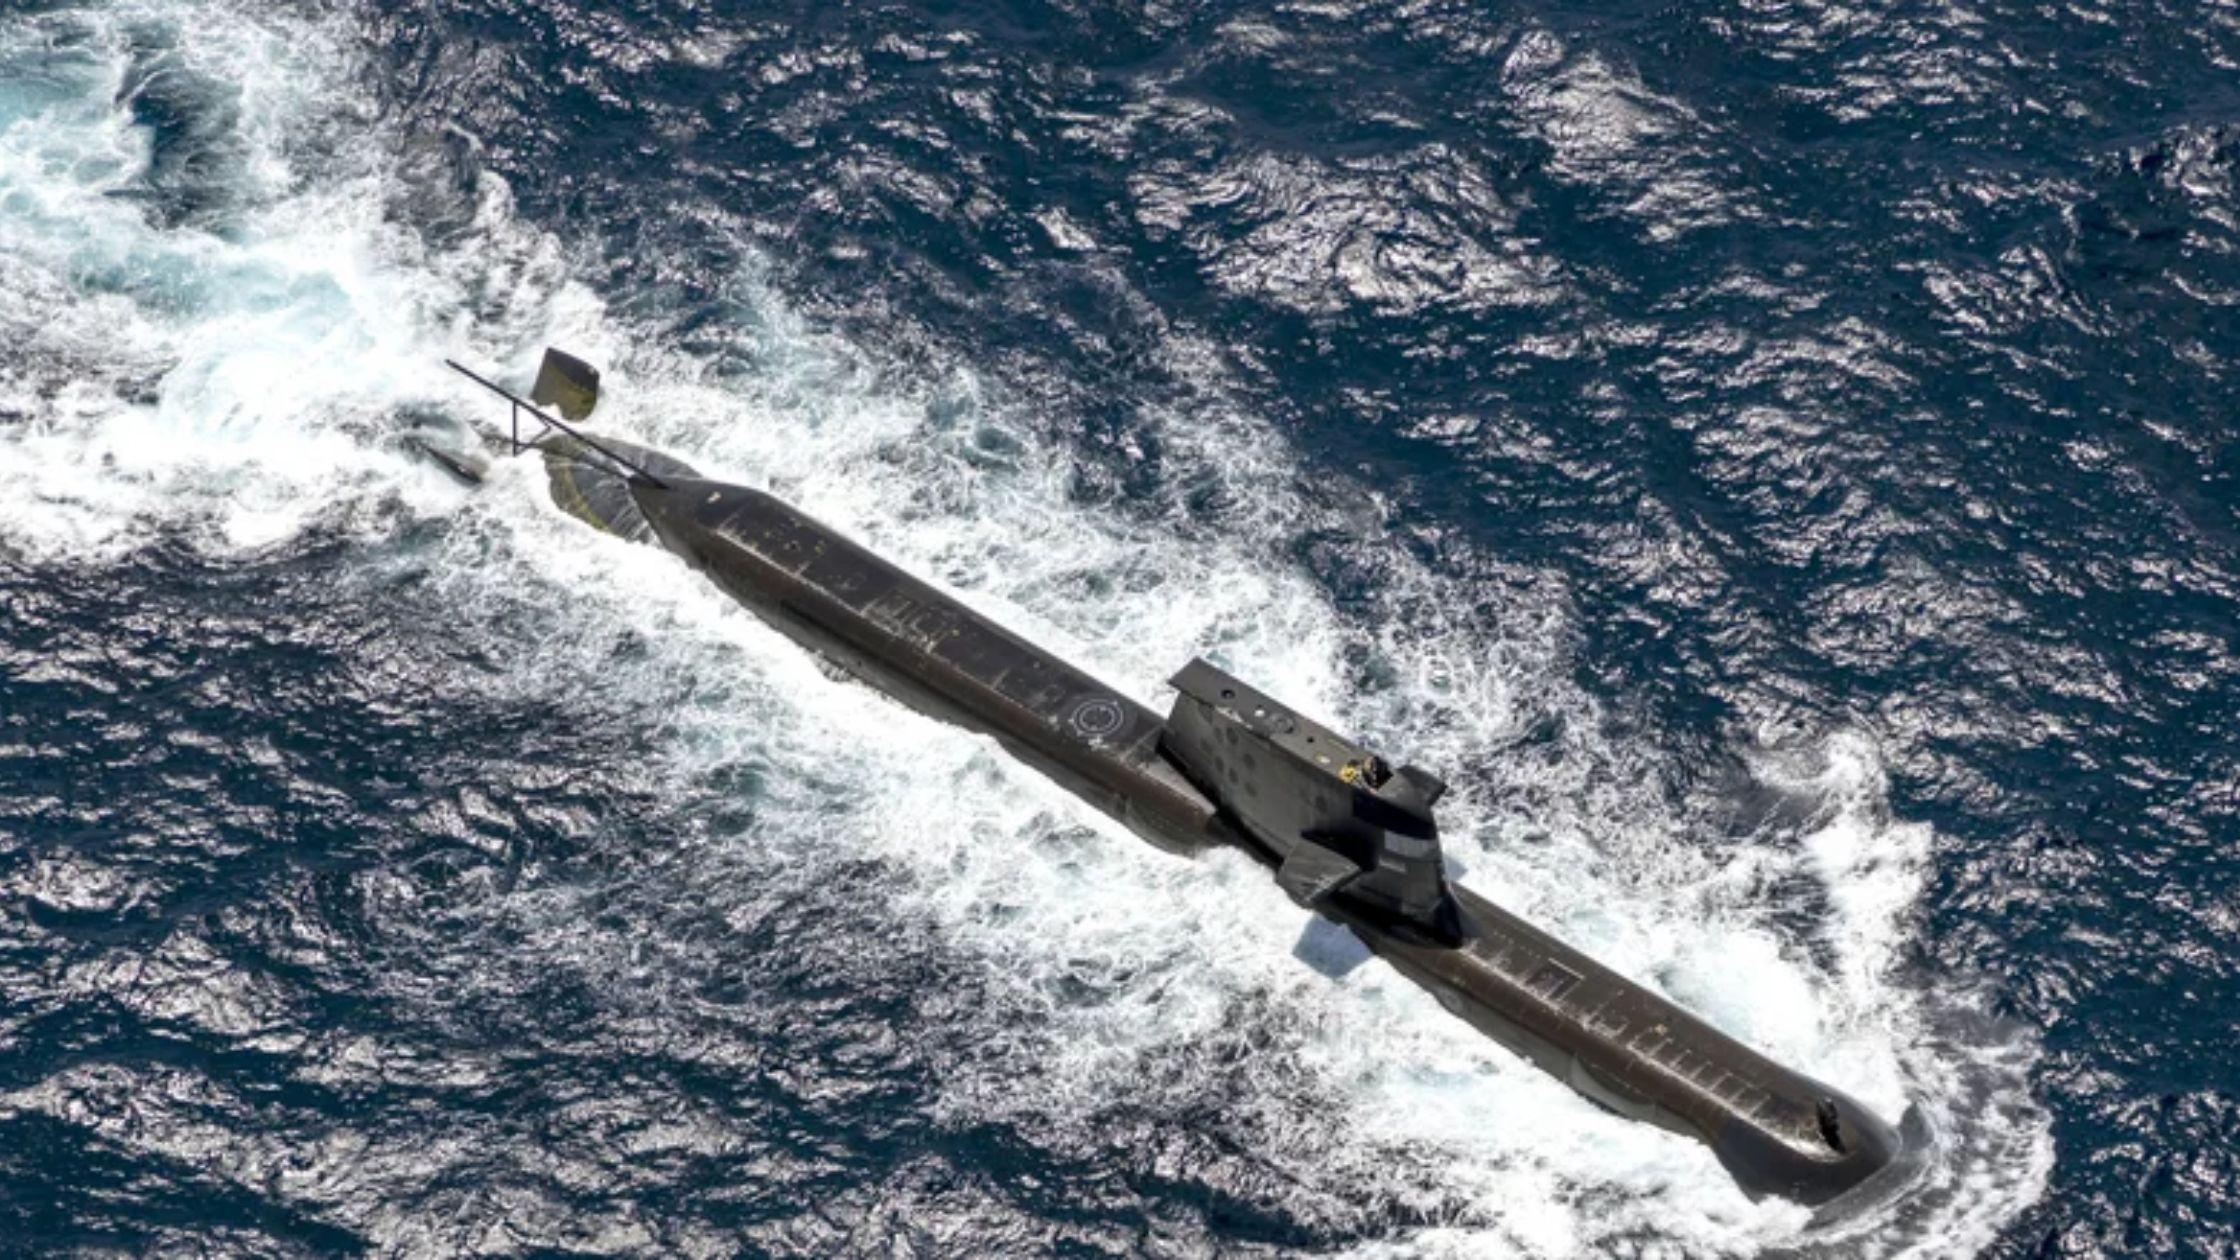 حرب الغواصات!! دمج الذكاء الاصطناعي في البحرية الأسترالية لكشف الغواصات الصينية